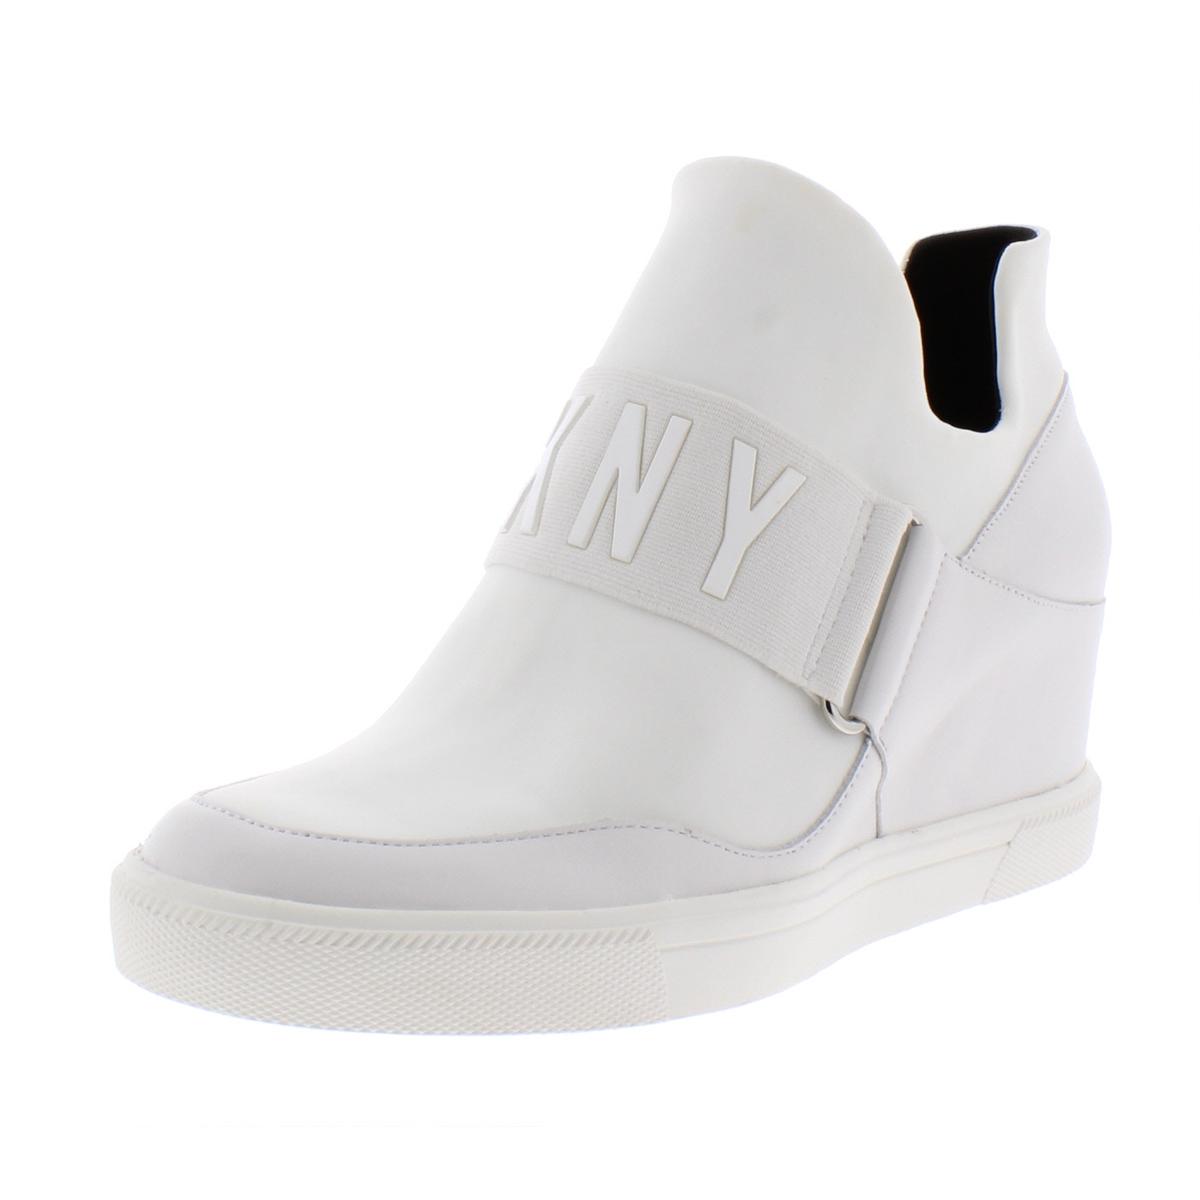 DKNY Womens Cosmos White Platform Sneakers Shoes 8.5 Medium (B,M) BHFO ...